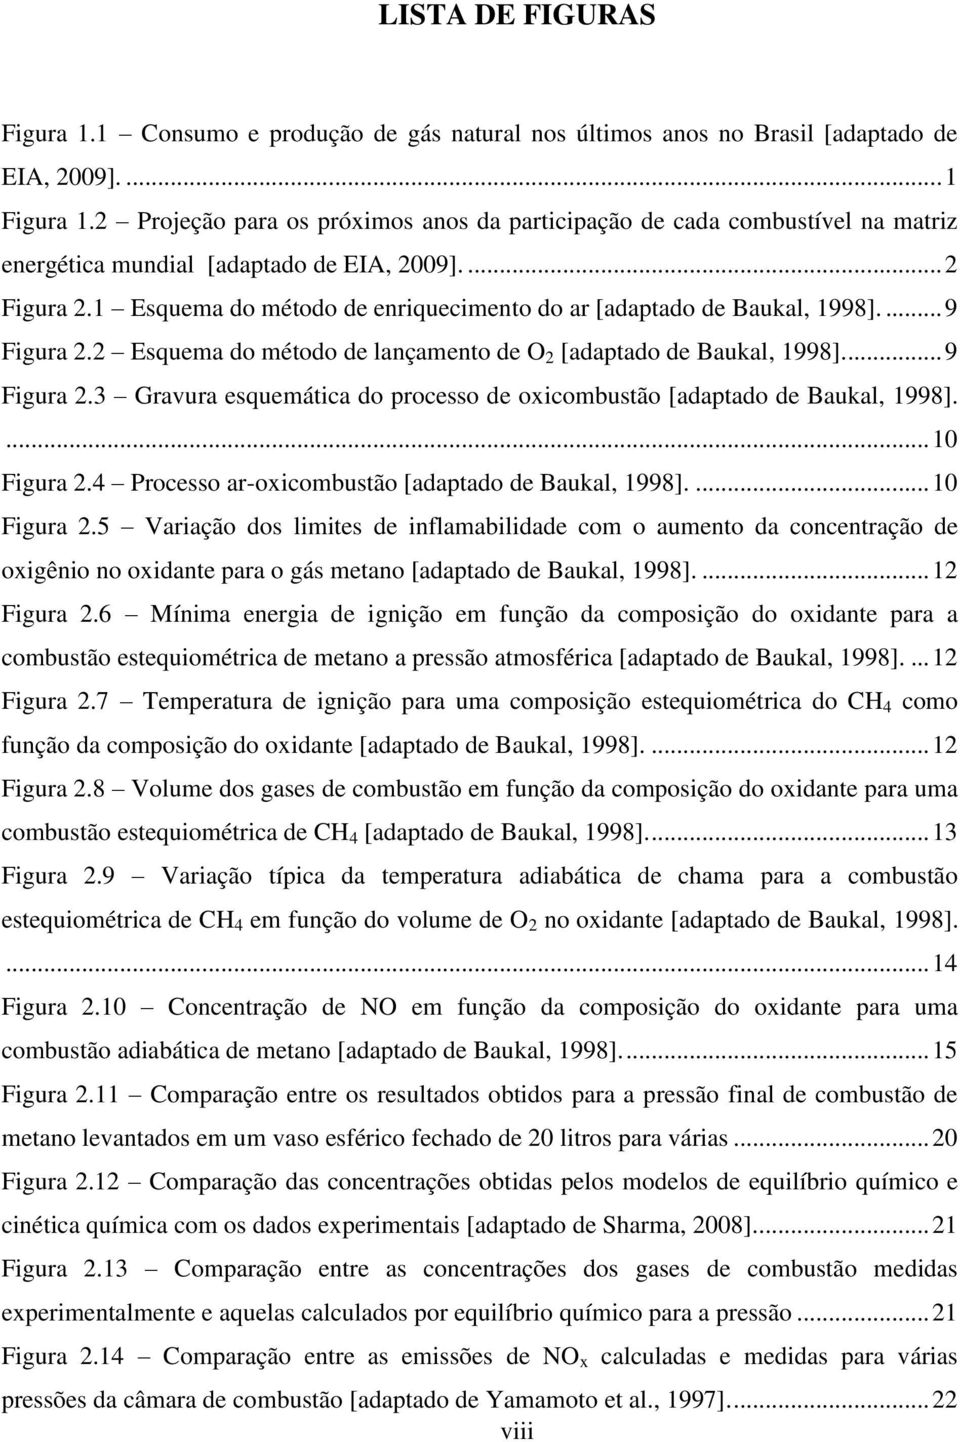 1 Esquema do método de enriquecimento do ar [adaptado de Baukal, 1998].... 9 Figura. Esquema do método de lançamento de O [adaptado de Baukal, 1998].... 9 Figura.3 Gravura esquemática do processo de oxicombustão [adaptado de Baukal, 1998].